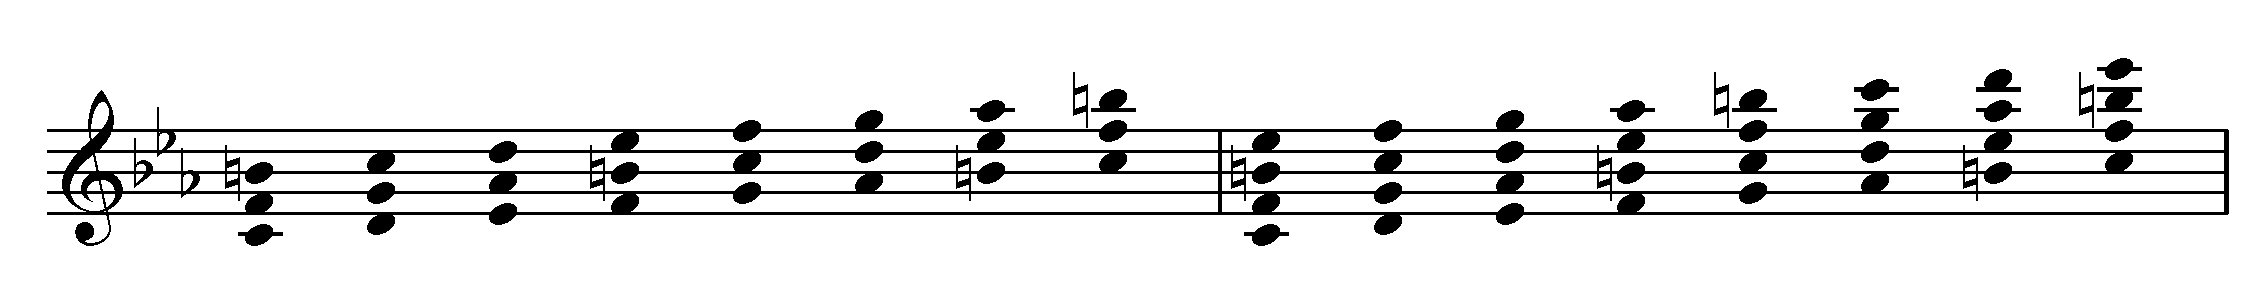 minore melodica quartali